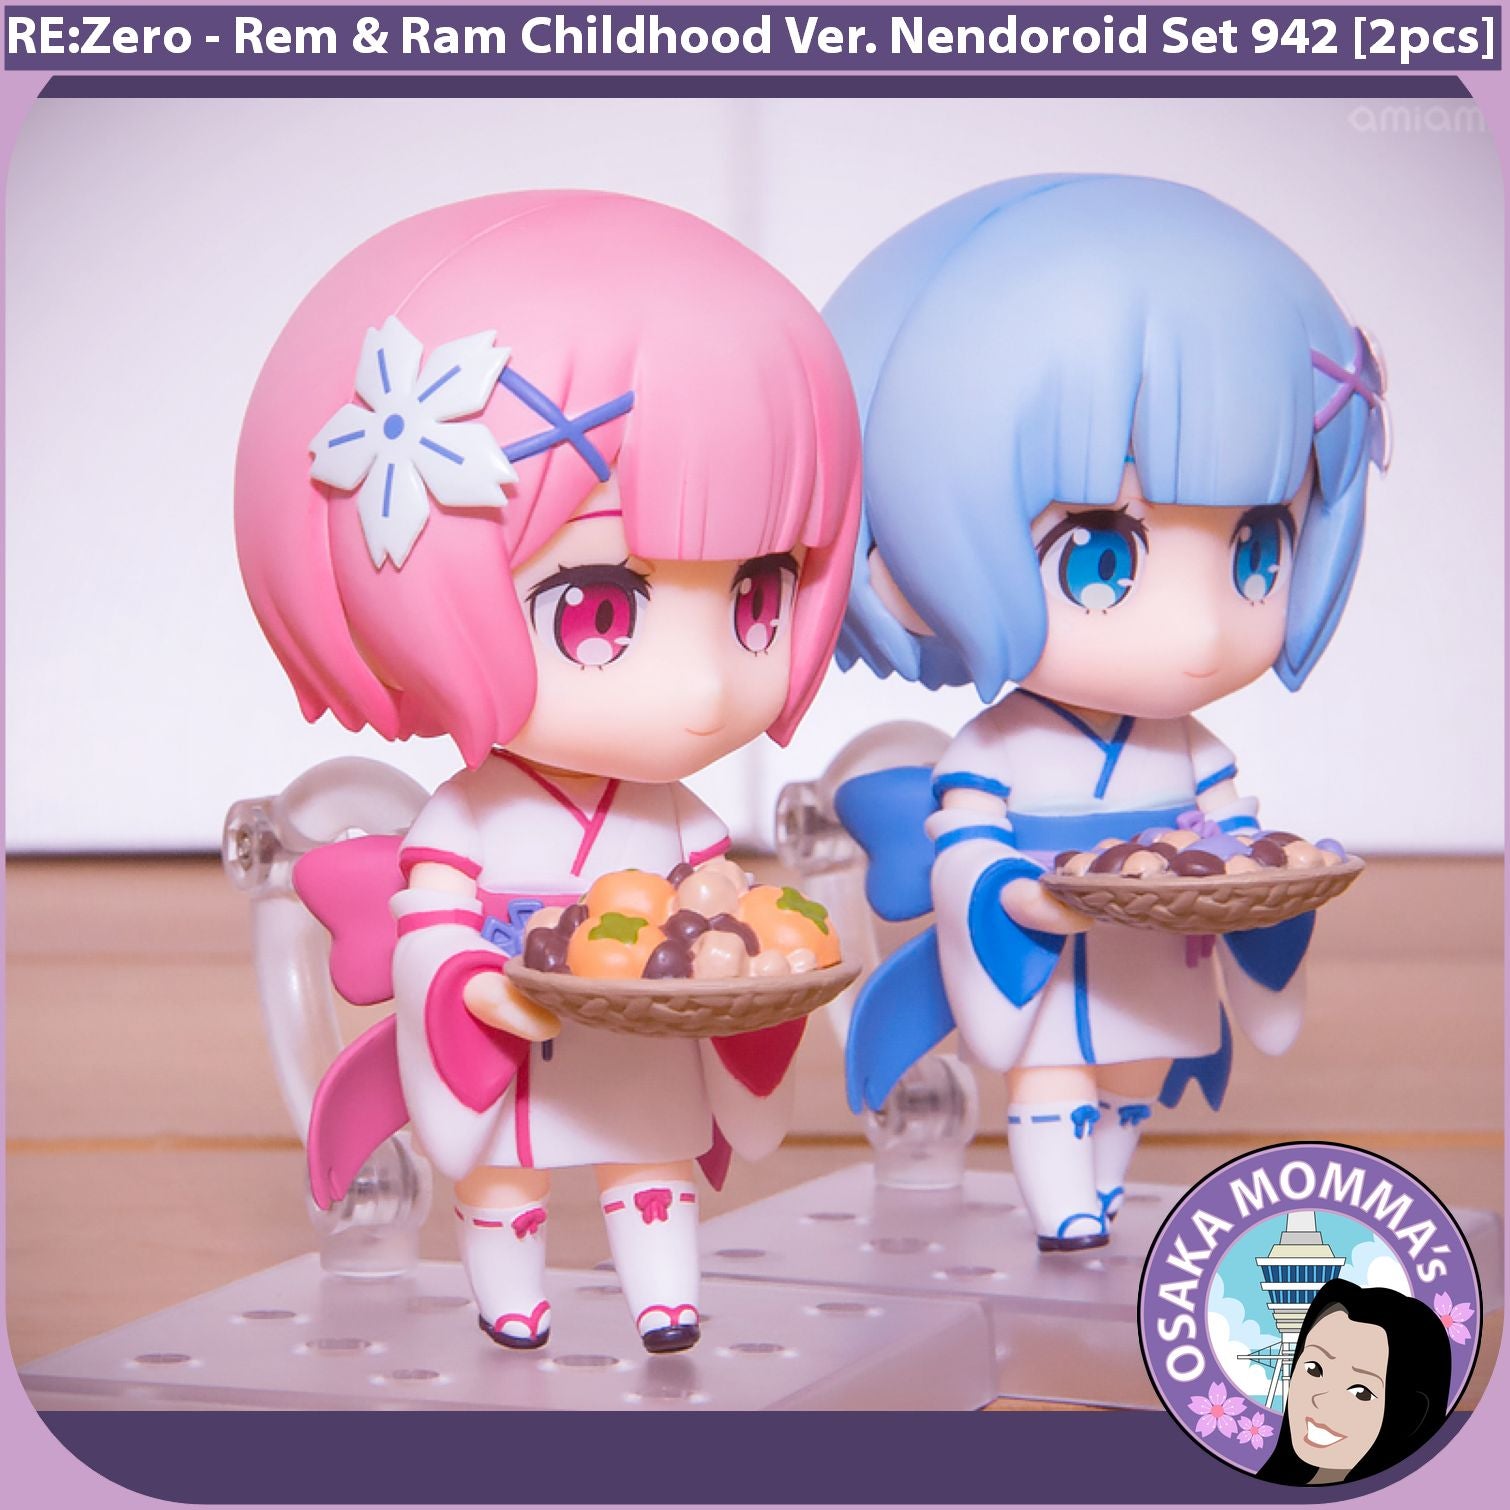 Rem & Ram Childhood Ver. Nendoroid Set 942